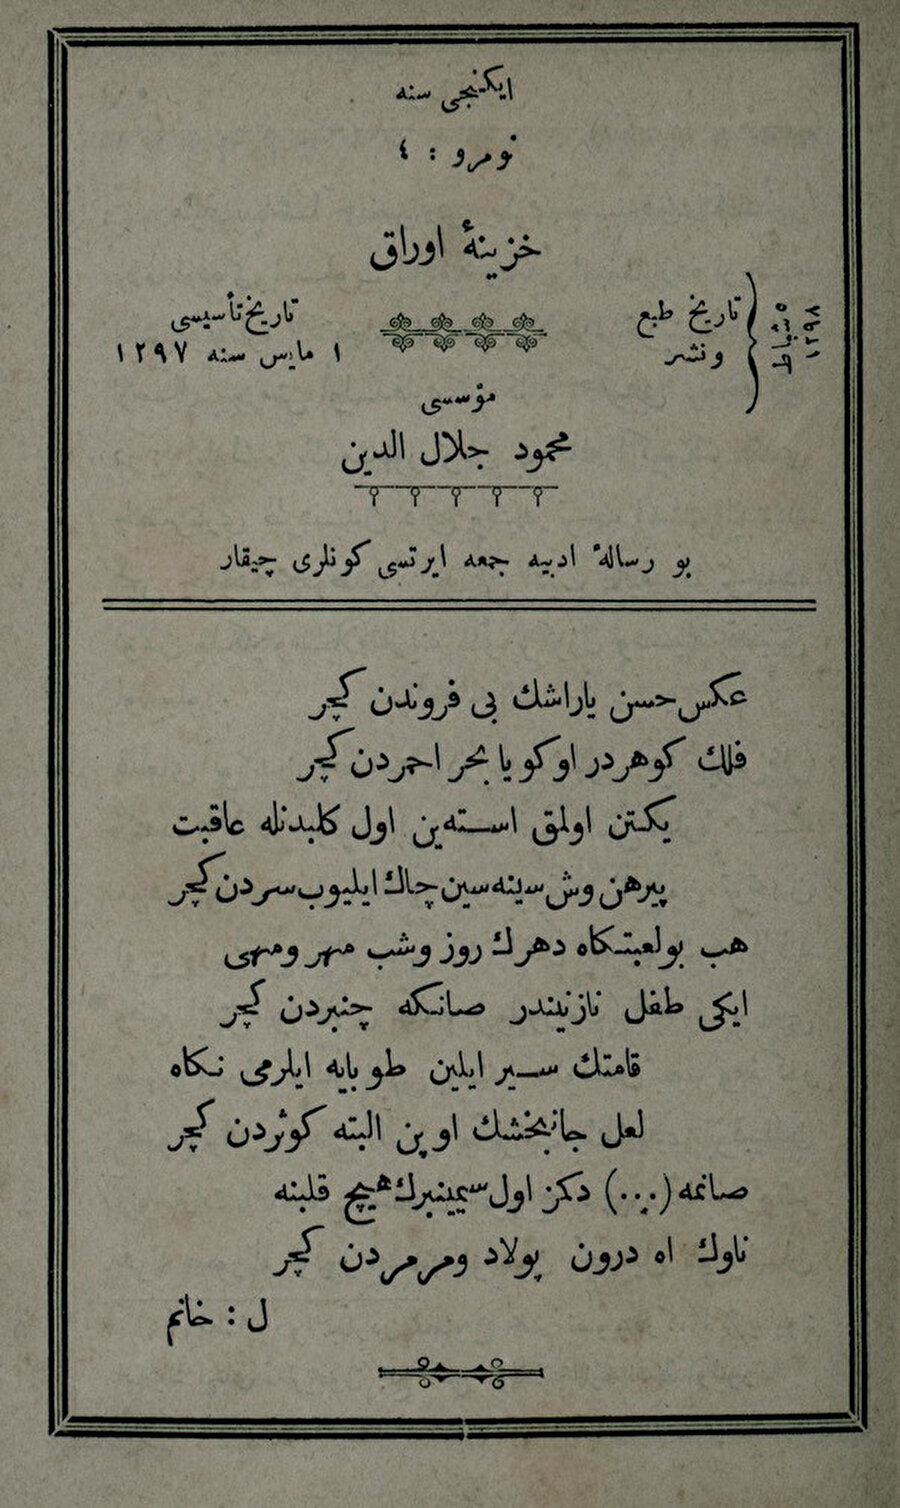 Leyla Hanım'ın Hazine-i Evrak'ta yayımlanan ilk şiiri